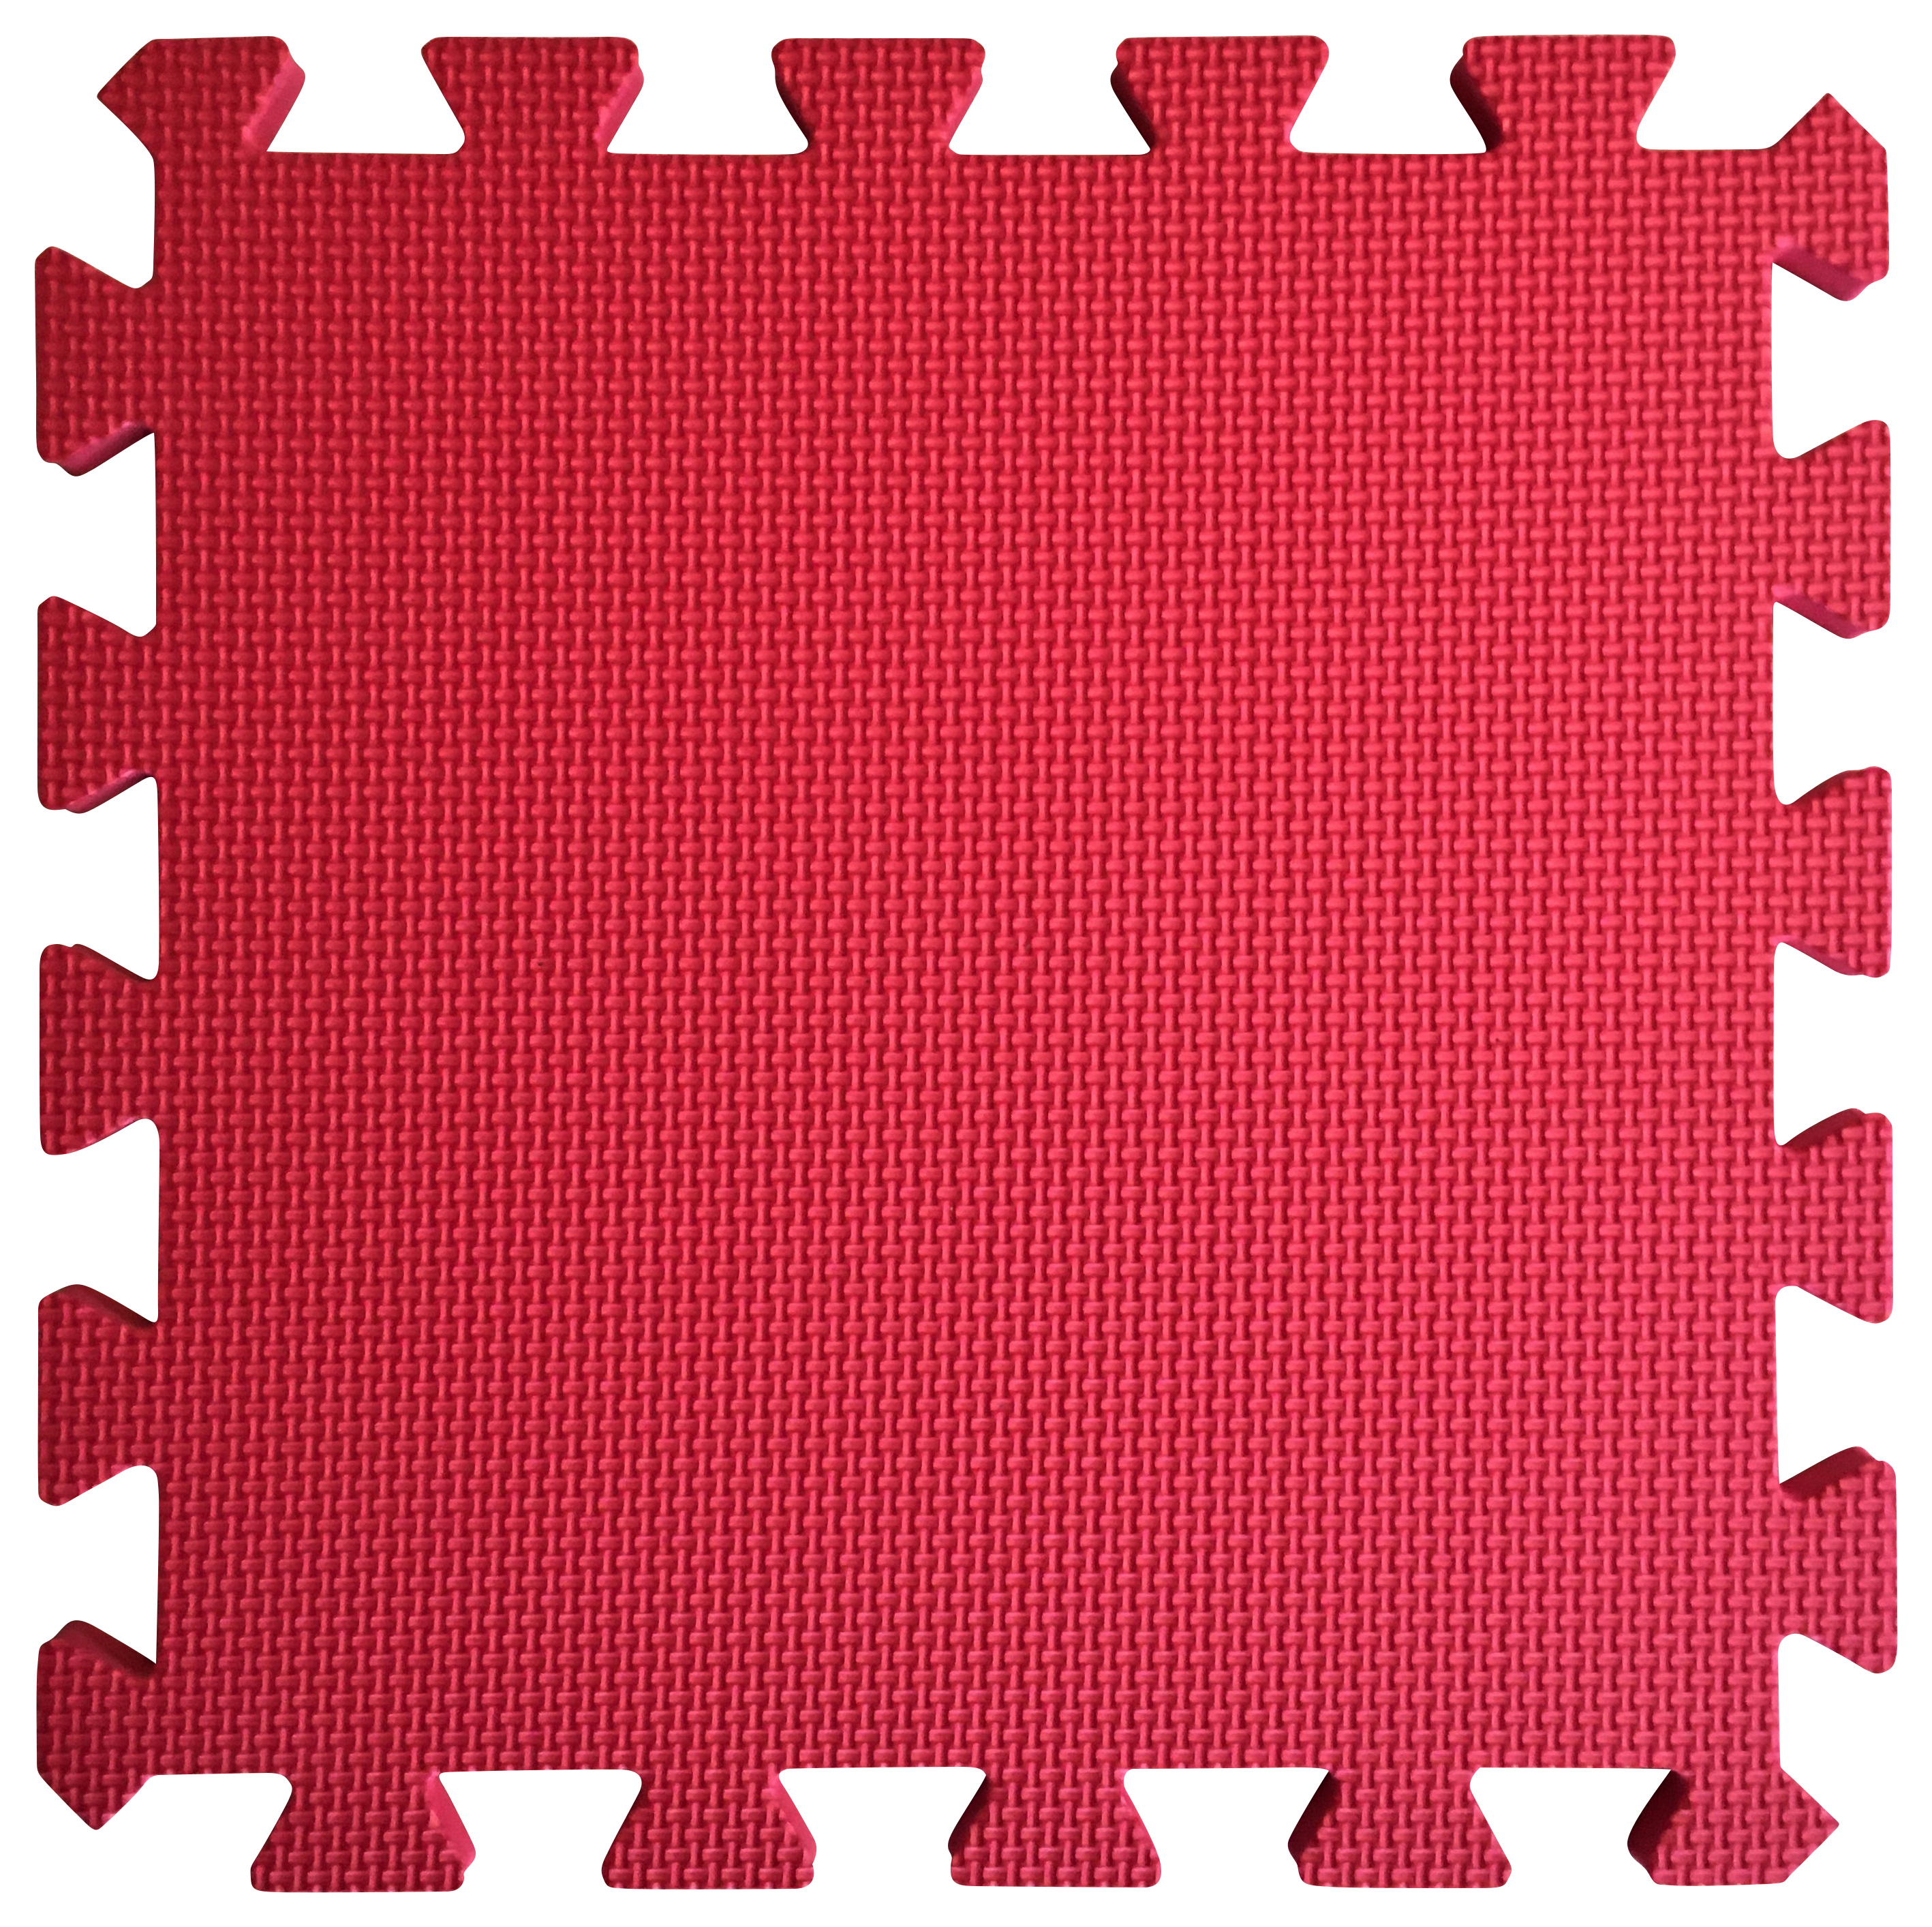 Image of Warm Floor Red Interlocking Floor Tiles for Garden Buildings - 5 x 5ft